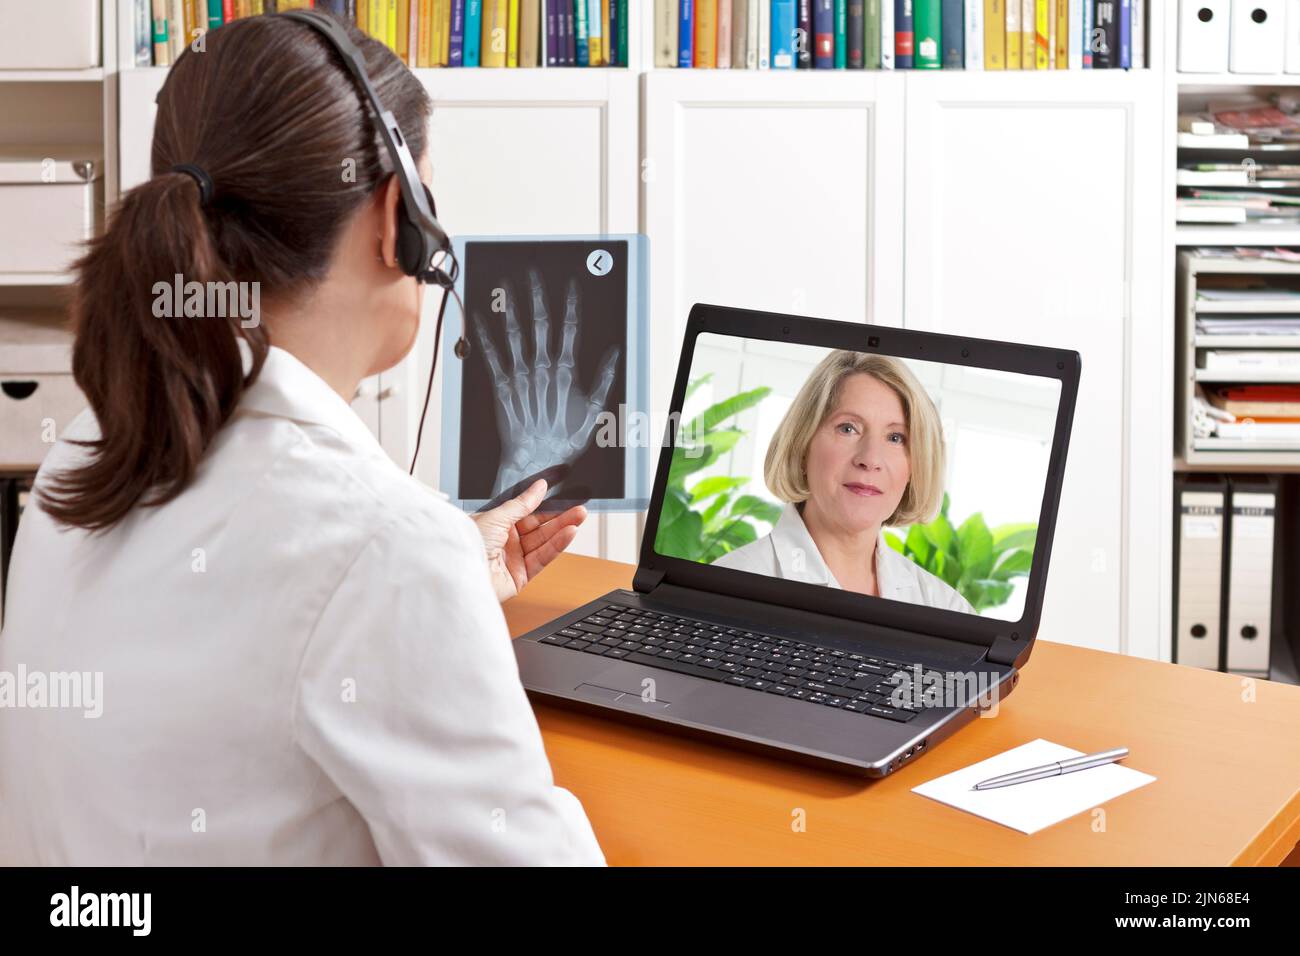 Concept de télémédecine : deux médecins ou pharmaciens au cours d'une conférence vidéo médicale sur les résultats des radiographies. Banque D'Images